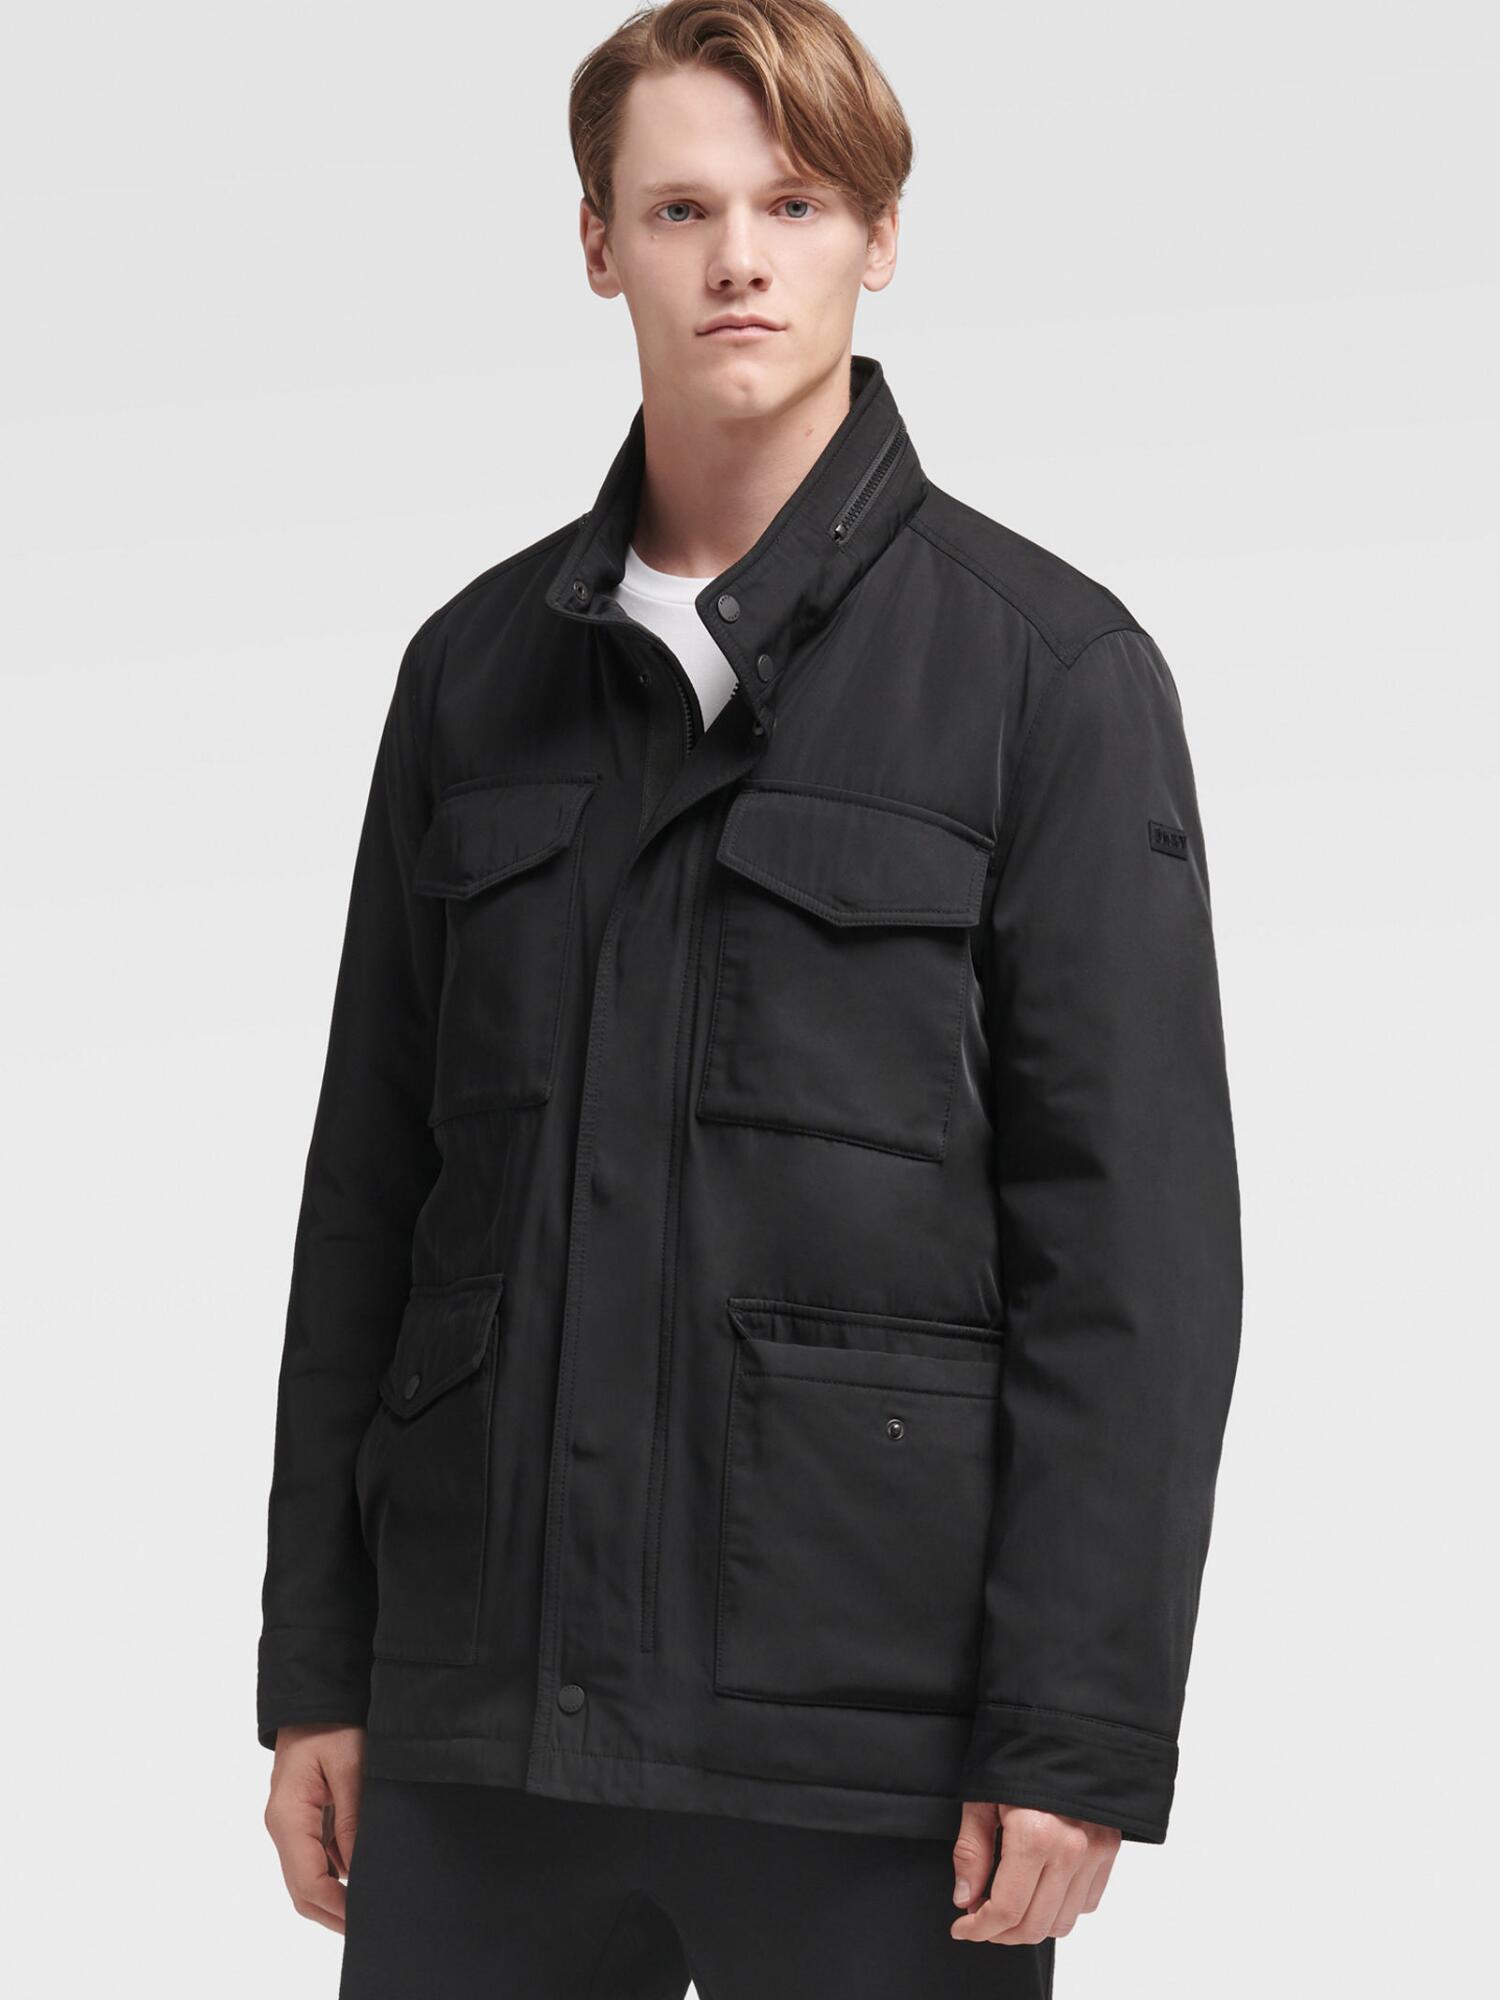 DKNY M-65 Field Jacket in Black for Men - Lyst